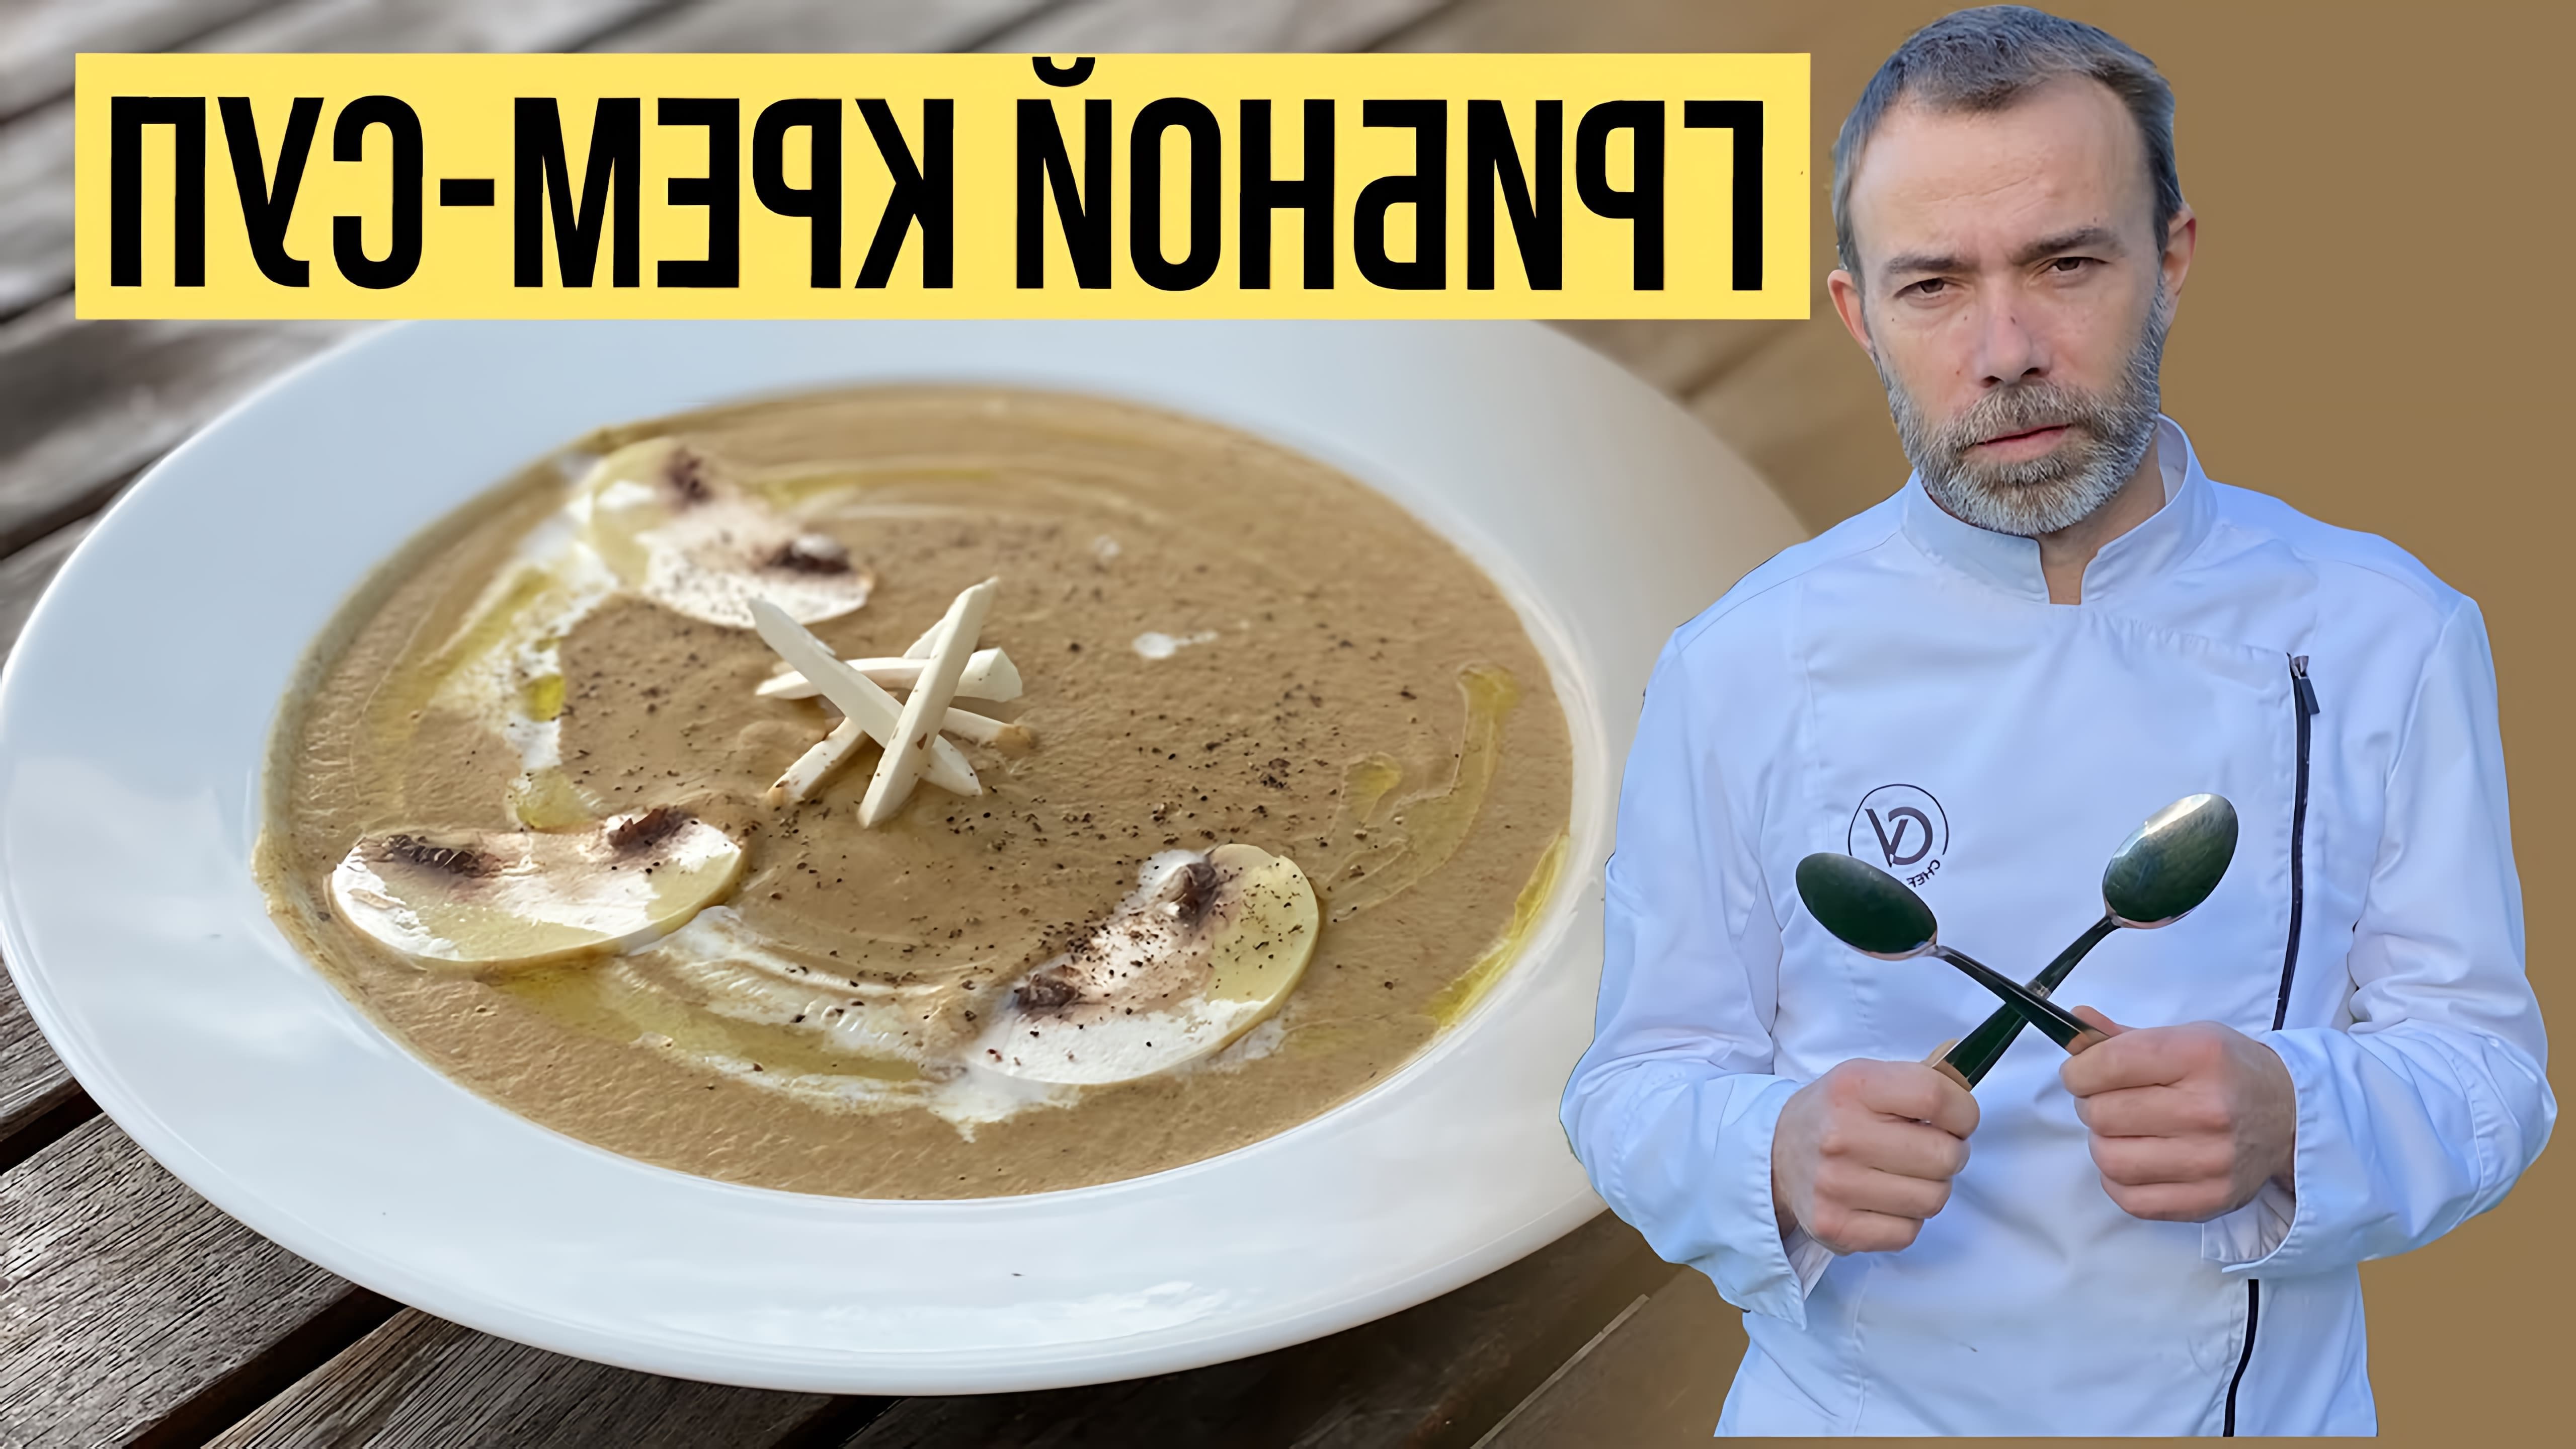 В этом видео-ролике будет показан рецепт приготовления грибного супа-пюре по французскому рецепту